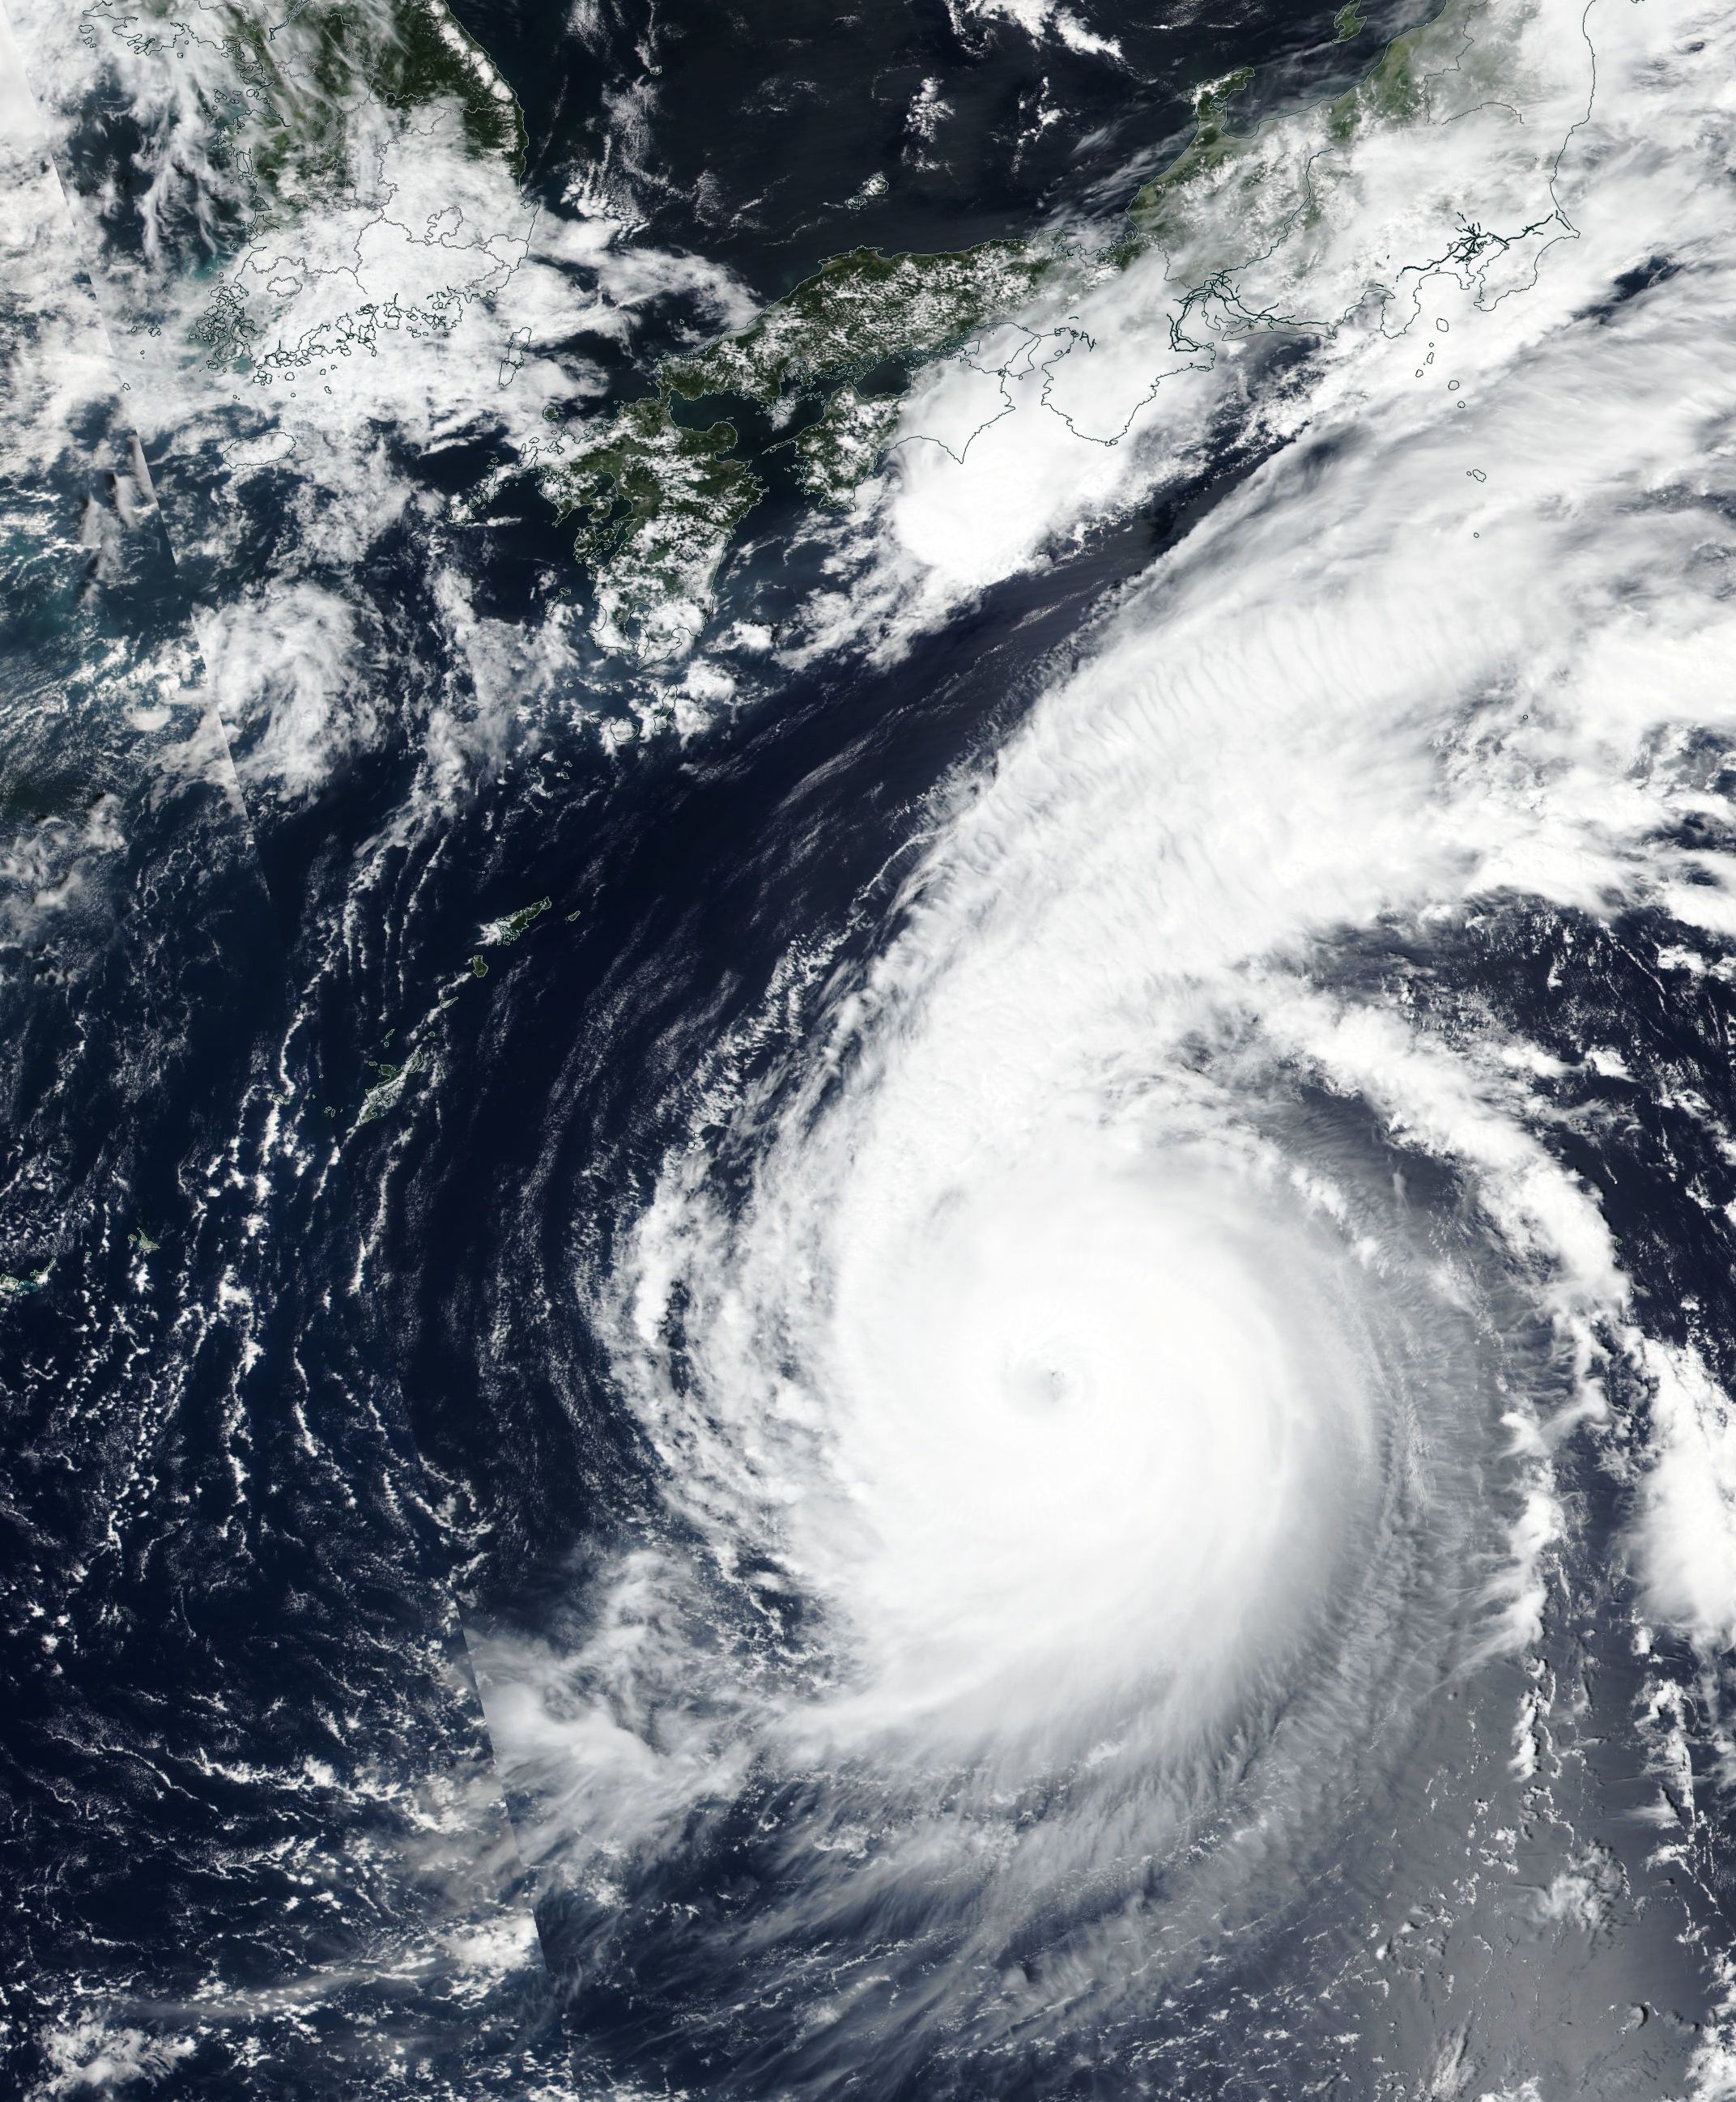 Над 1 милион души в западните японски градове Кобе и Осака трябва да напуснат своите домове и да се настанят в евакуационните центрове заради наближаващия тайфун „Джеби”. Силният вятър и проливните дъждове, предизвикани от тропическата буря, принудиха авиокомпаниите да отменят повече от 700 вътрешни полета в Япония, най-вече по маршрутите между градовете Кобе, Нагоя, Осака. Тайфунът се очаква да премине над централната западна част на Японските острови с ветрове със скорост от 208 км/ч и пориви с над 216 км/ч. През следващите 24 часа над района, засегнат от бурята, ще паднат повече от 500 литра дъжд на квадратен метър.